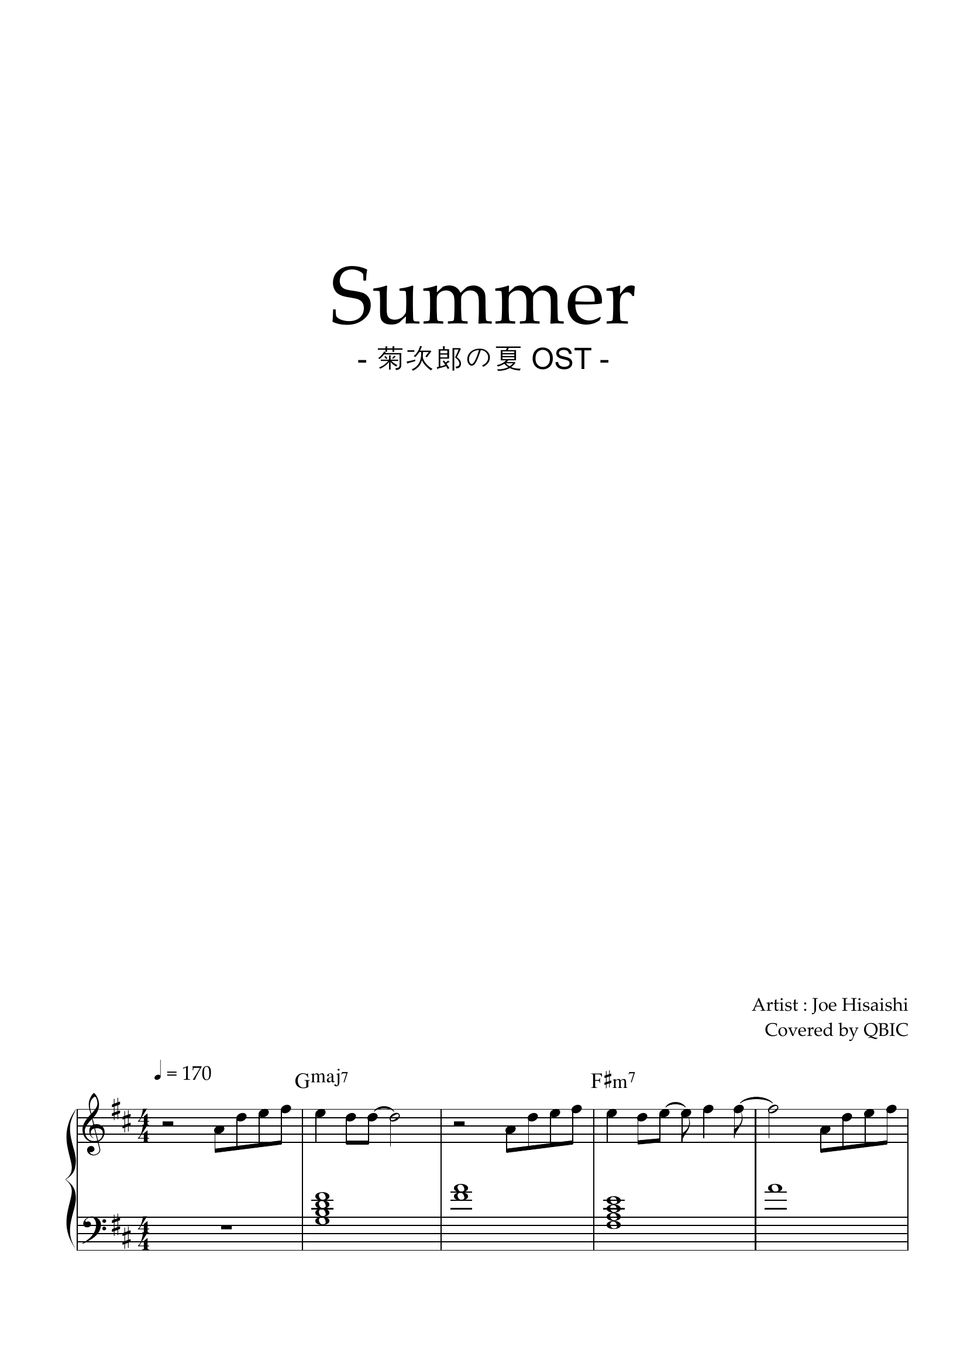 Summer by QBIC